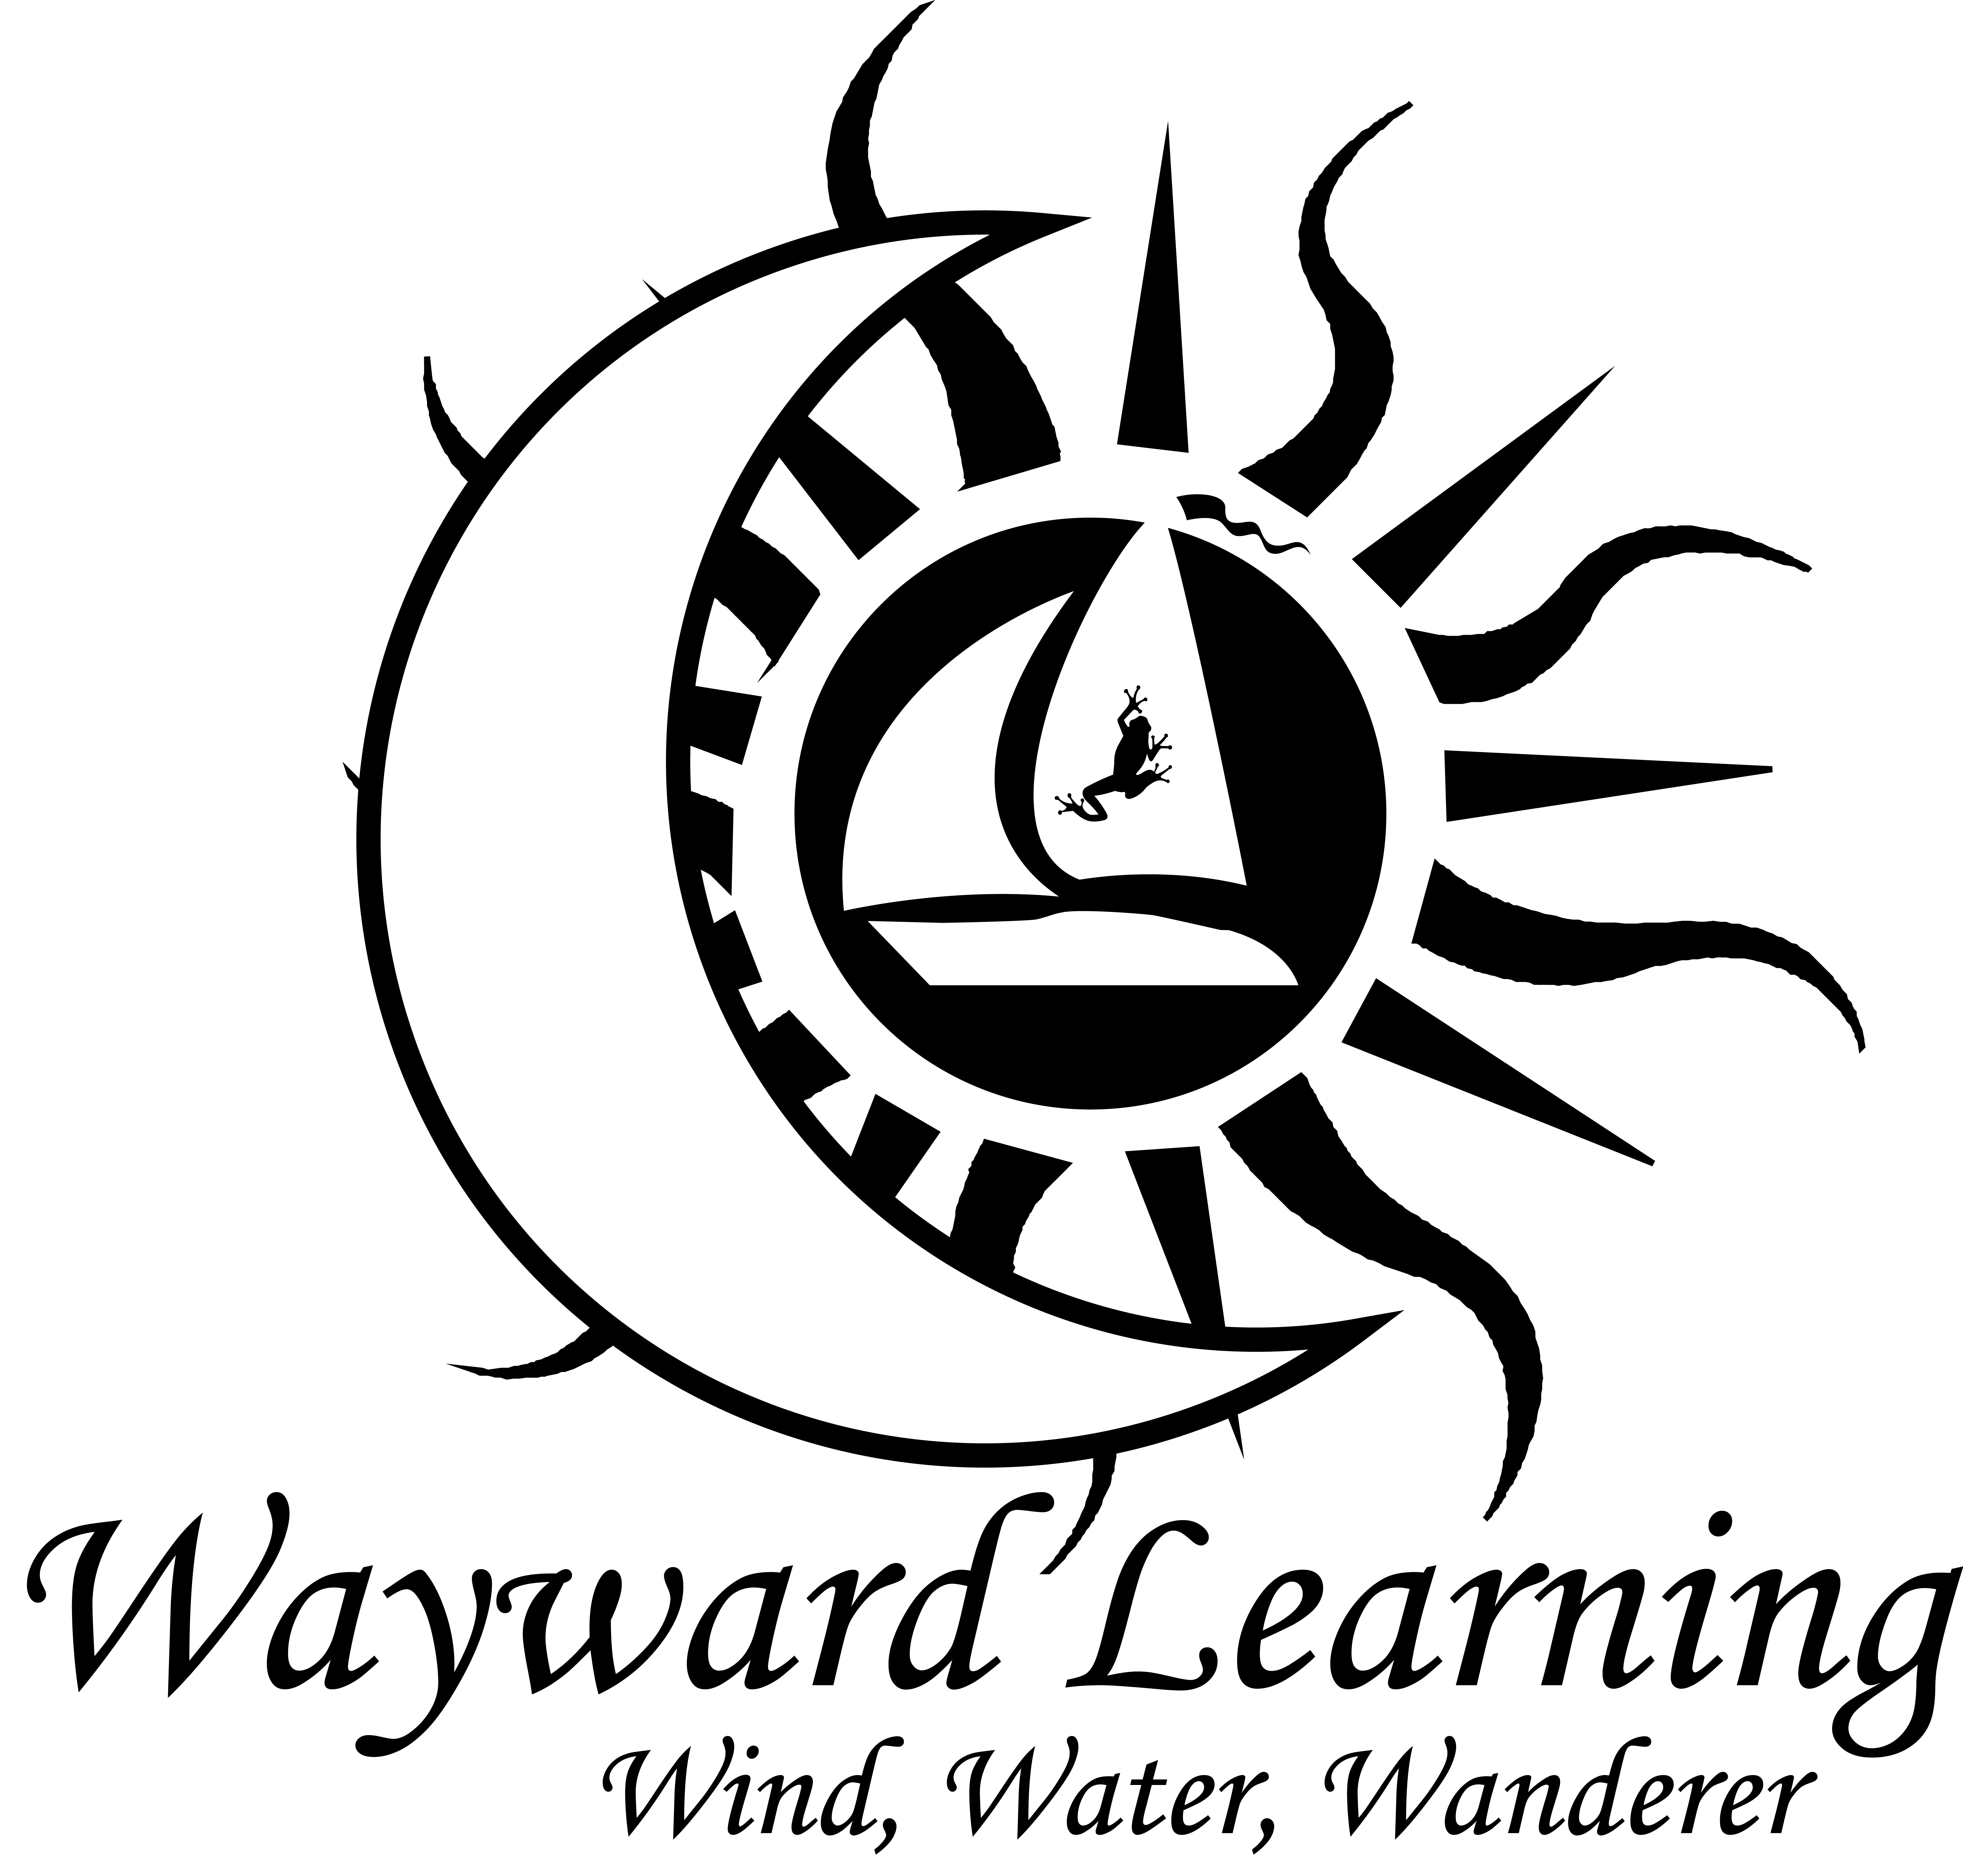 Wayward Learning